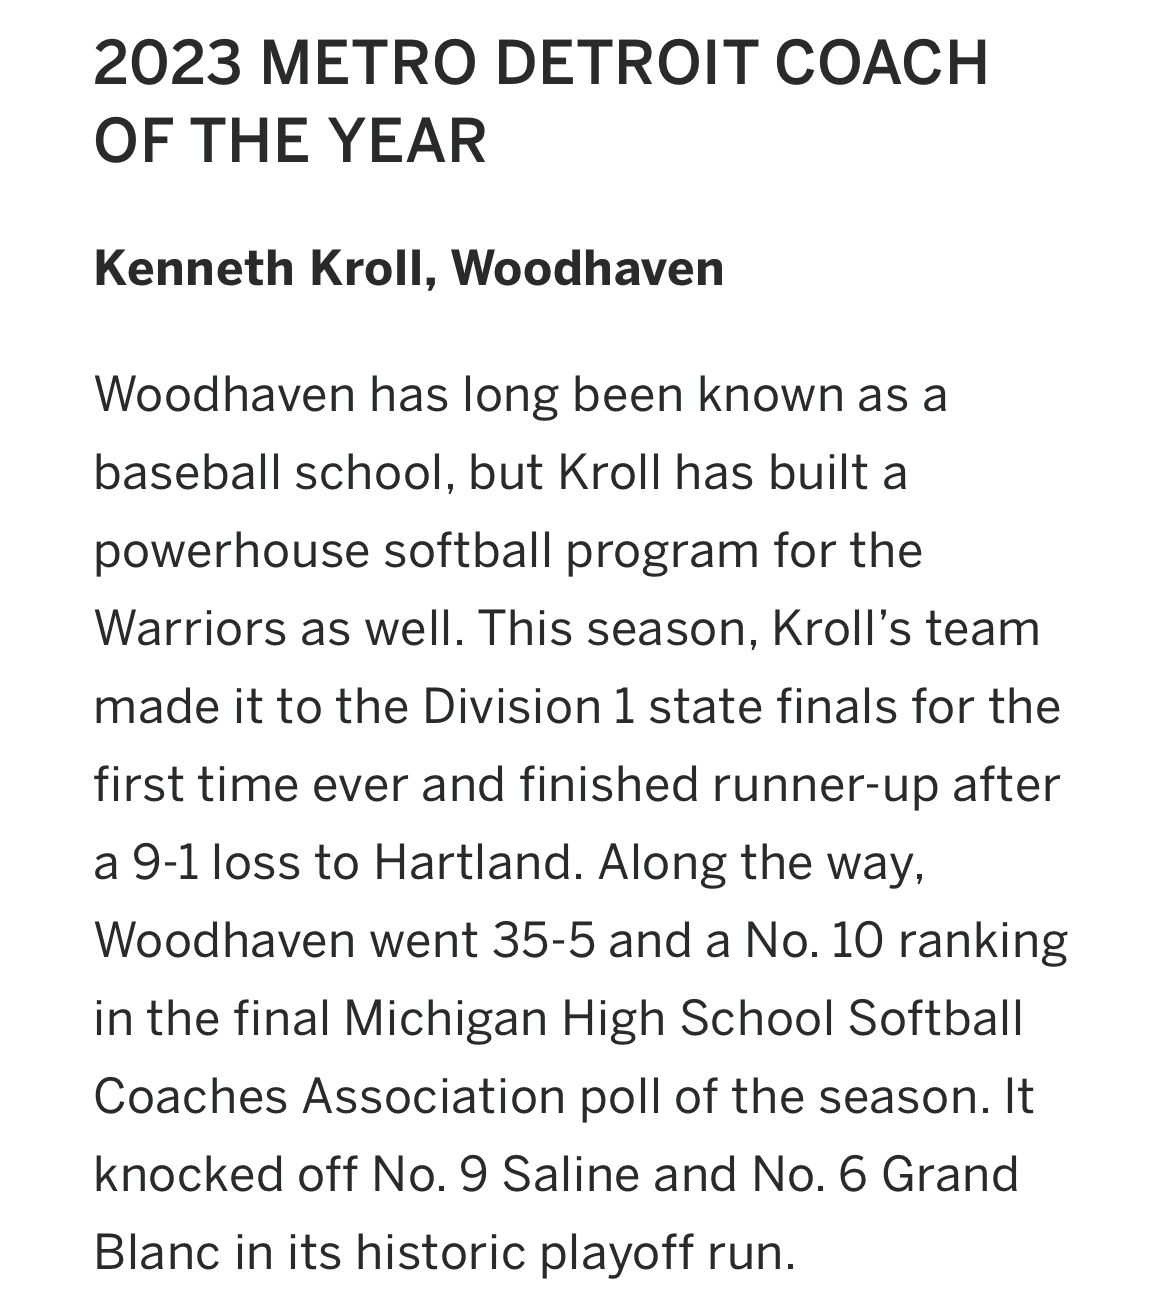 Congrats to Generals Coach Kroll